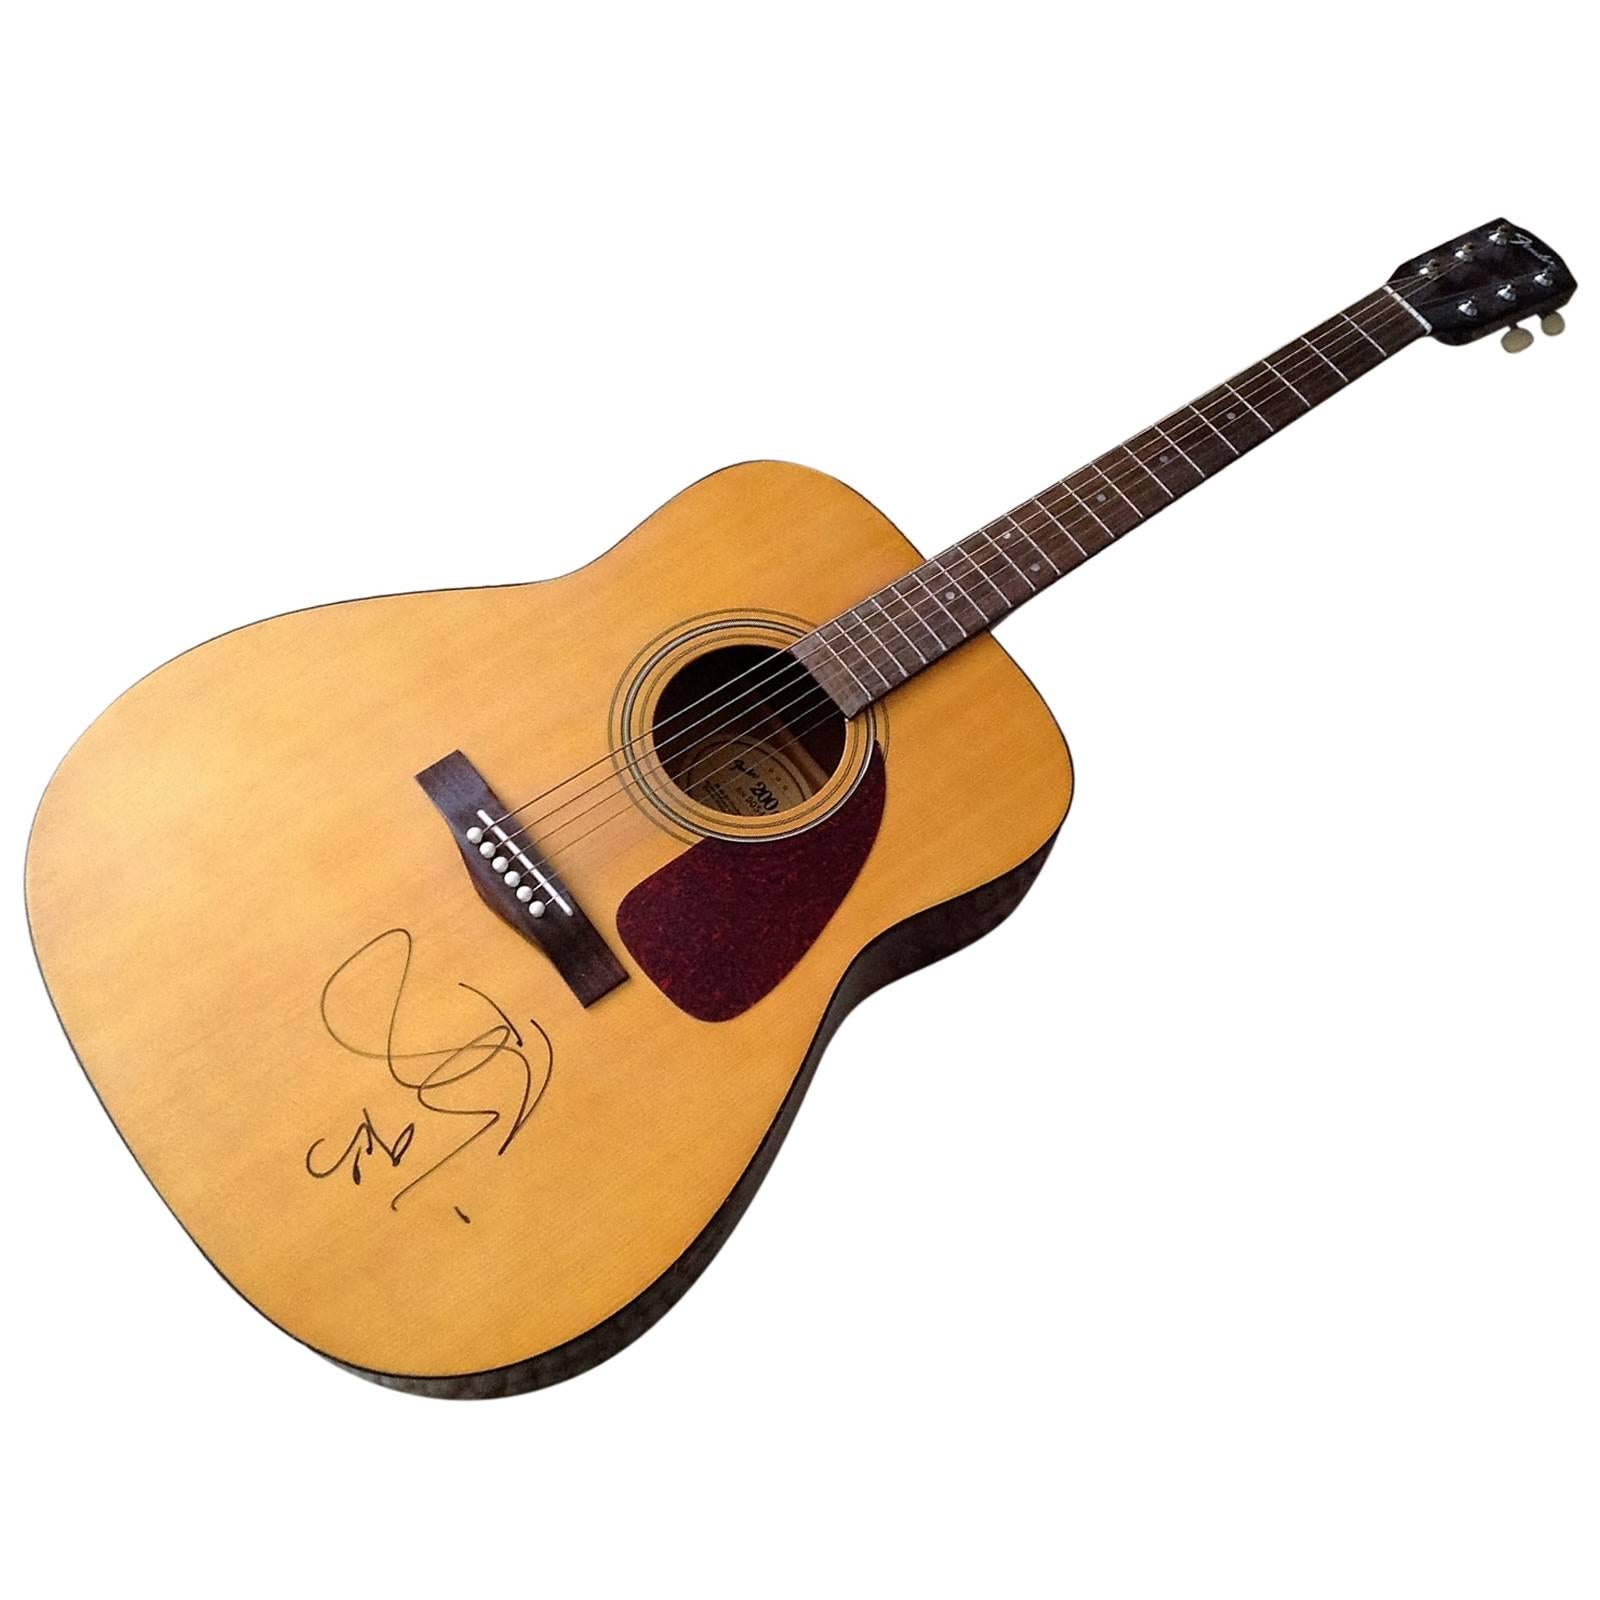 David Bowie Autographed Guitar For Sale